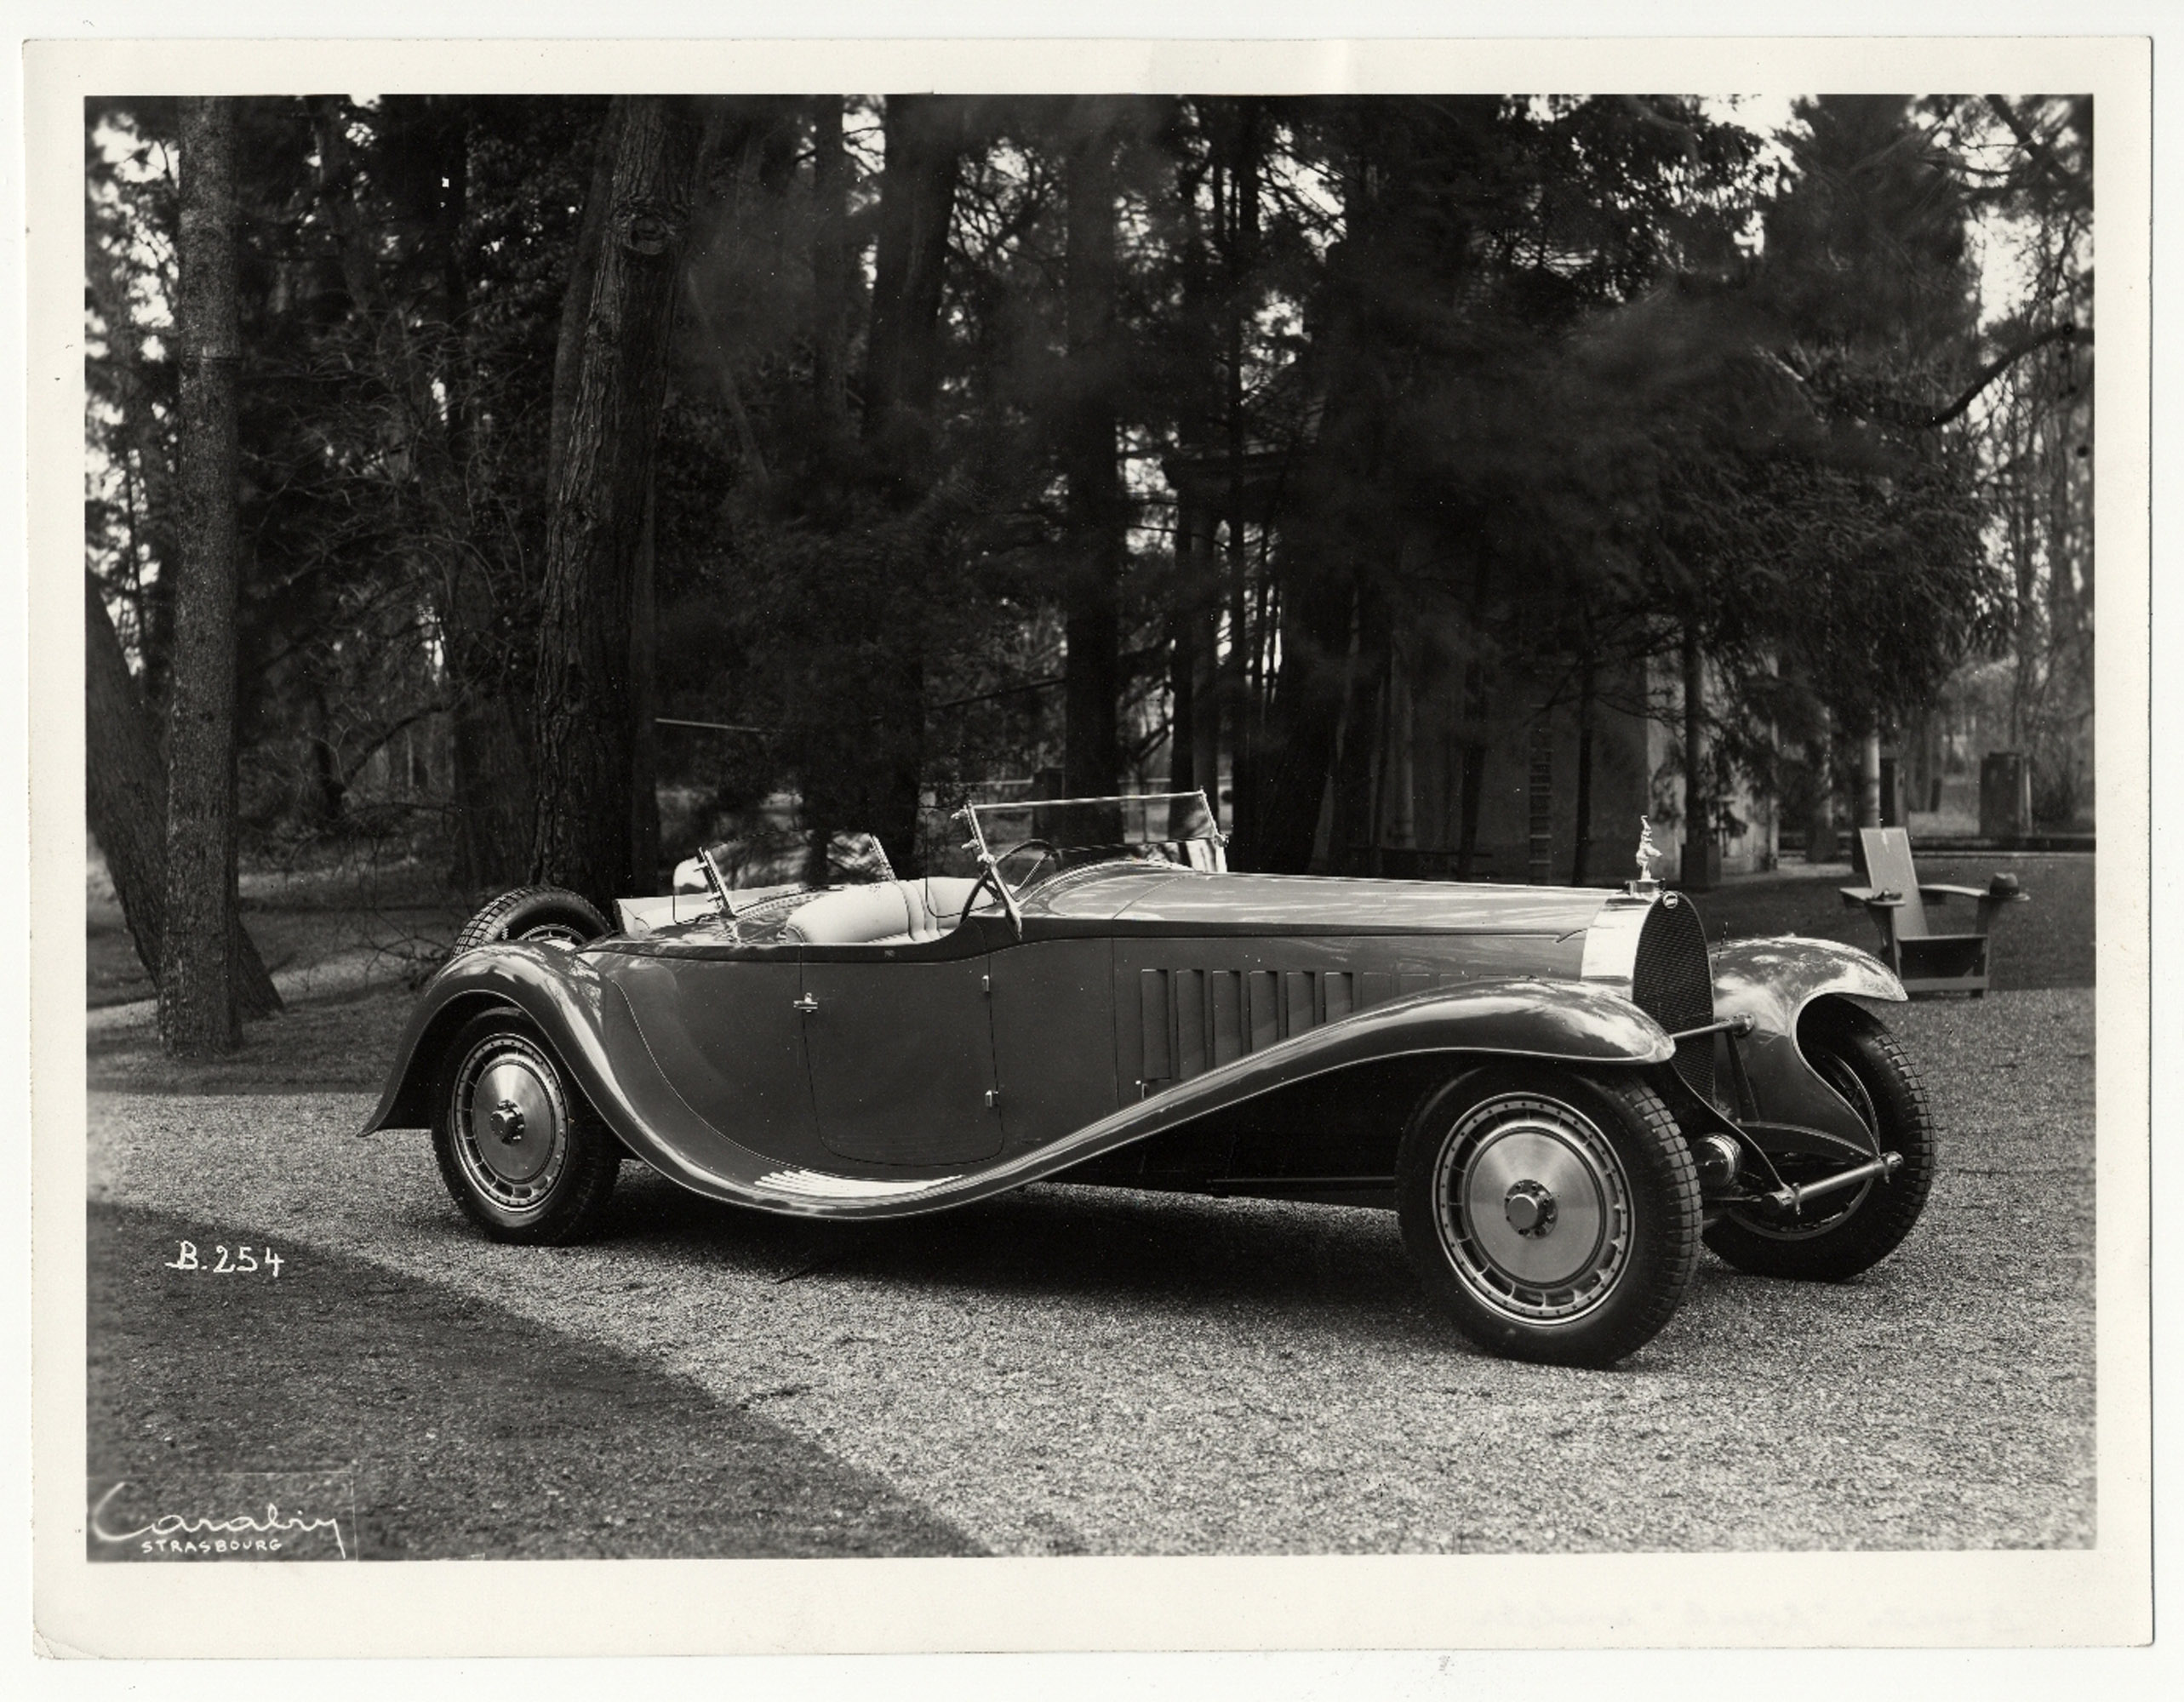 Первый прототип был построен в 1926 году - он имел сверхдлинную колесную базу и еще больший двигатель с рабочим объемом 14,7 литра. Несколько лет спустя, в 1932 году команде Bugatti удалось продать первый Royale парижскому промышленнику Арманду Эдерс